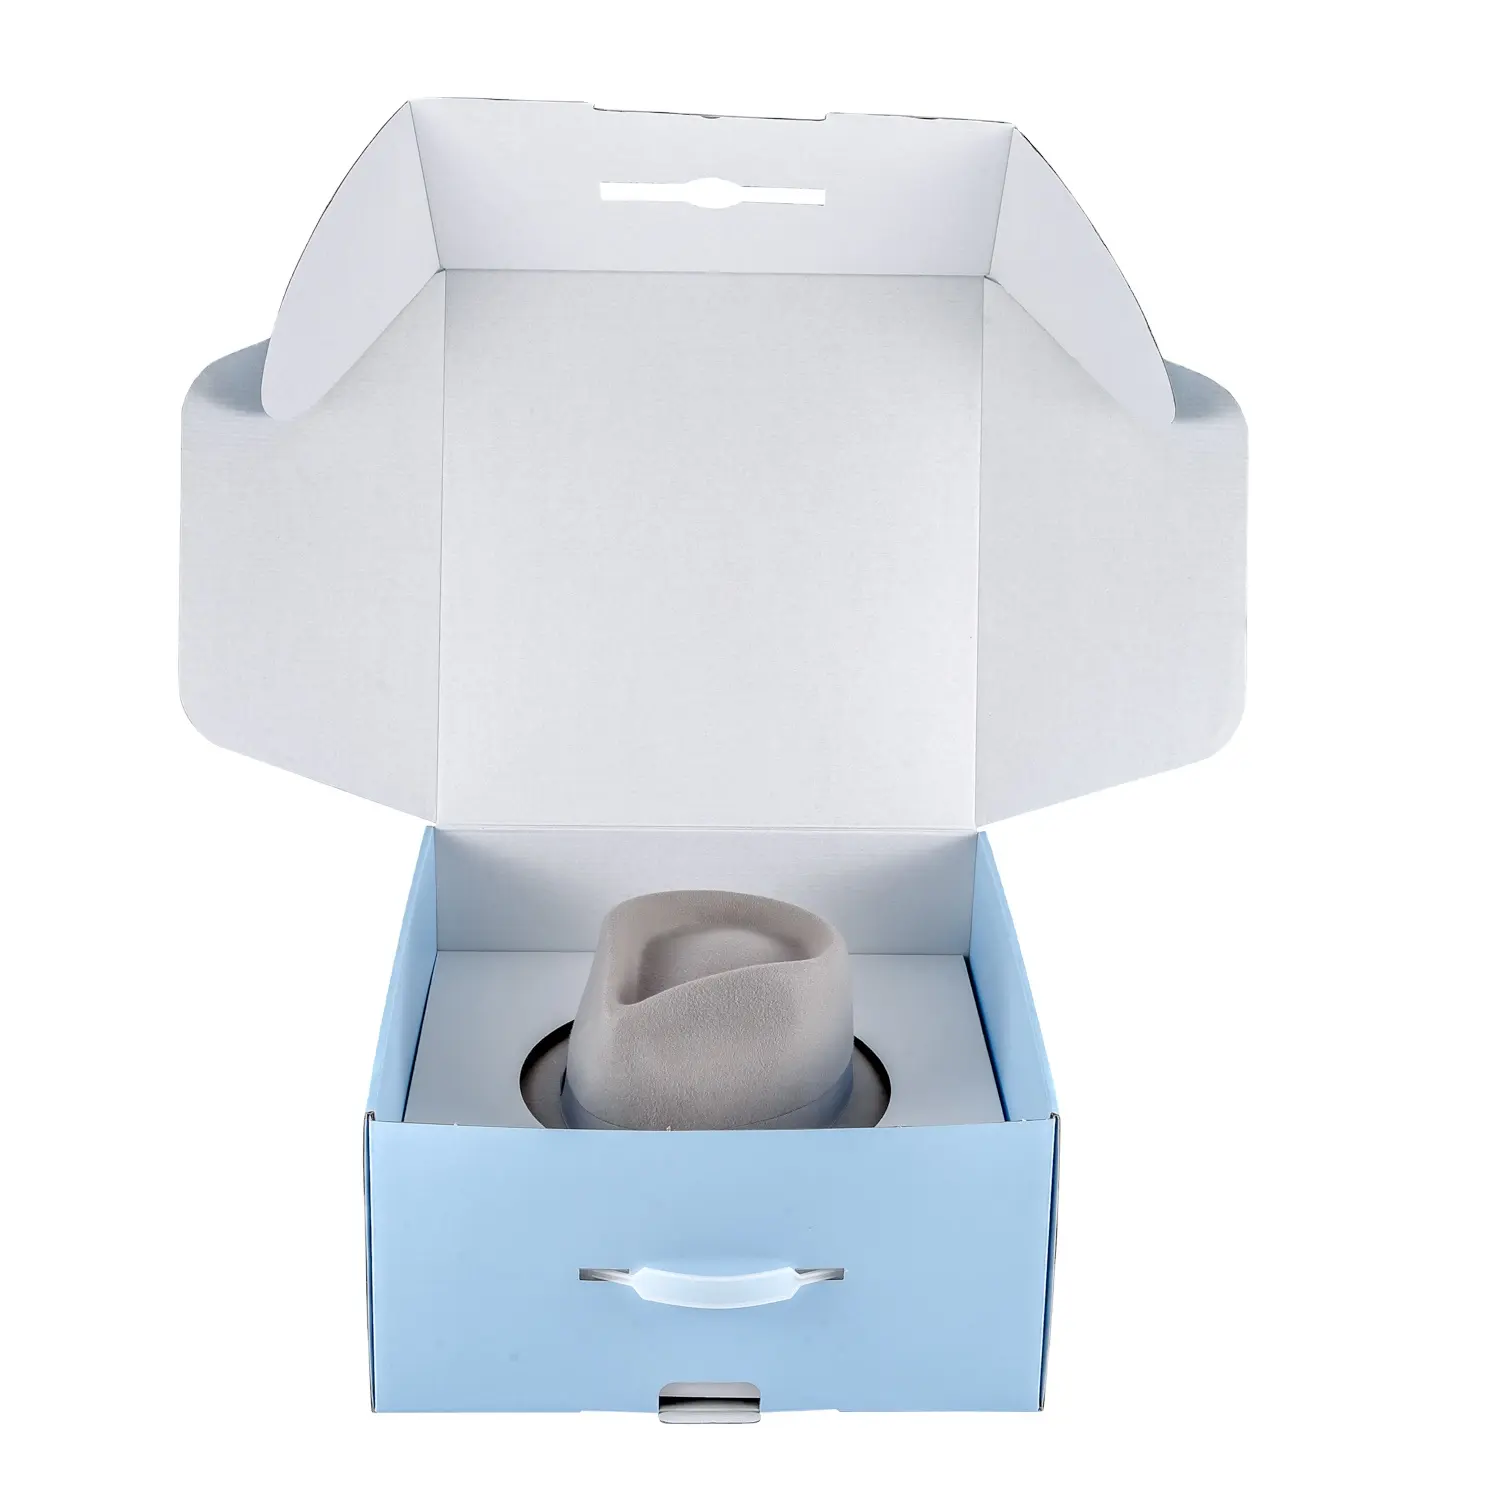 Exquisite benutzer definierte Mailer Box Verpackungs box für Hut mit Griffen und Einsätzen